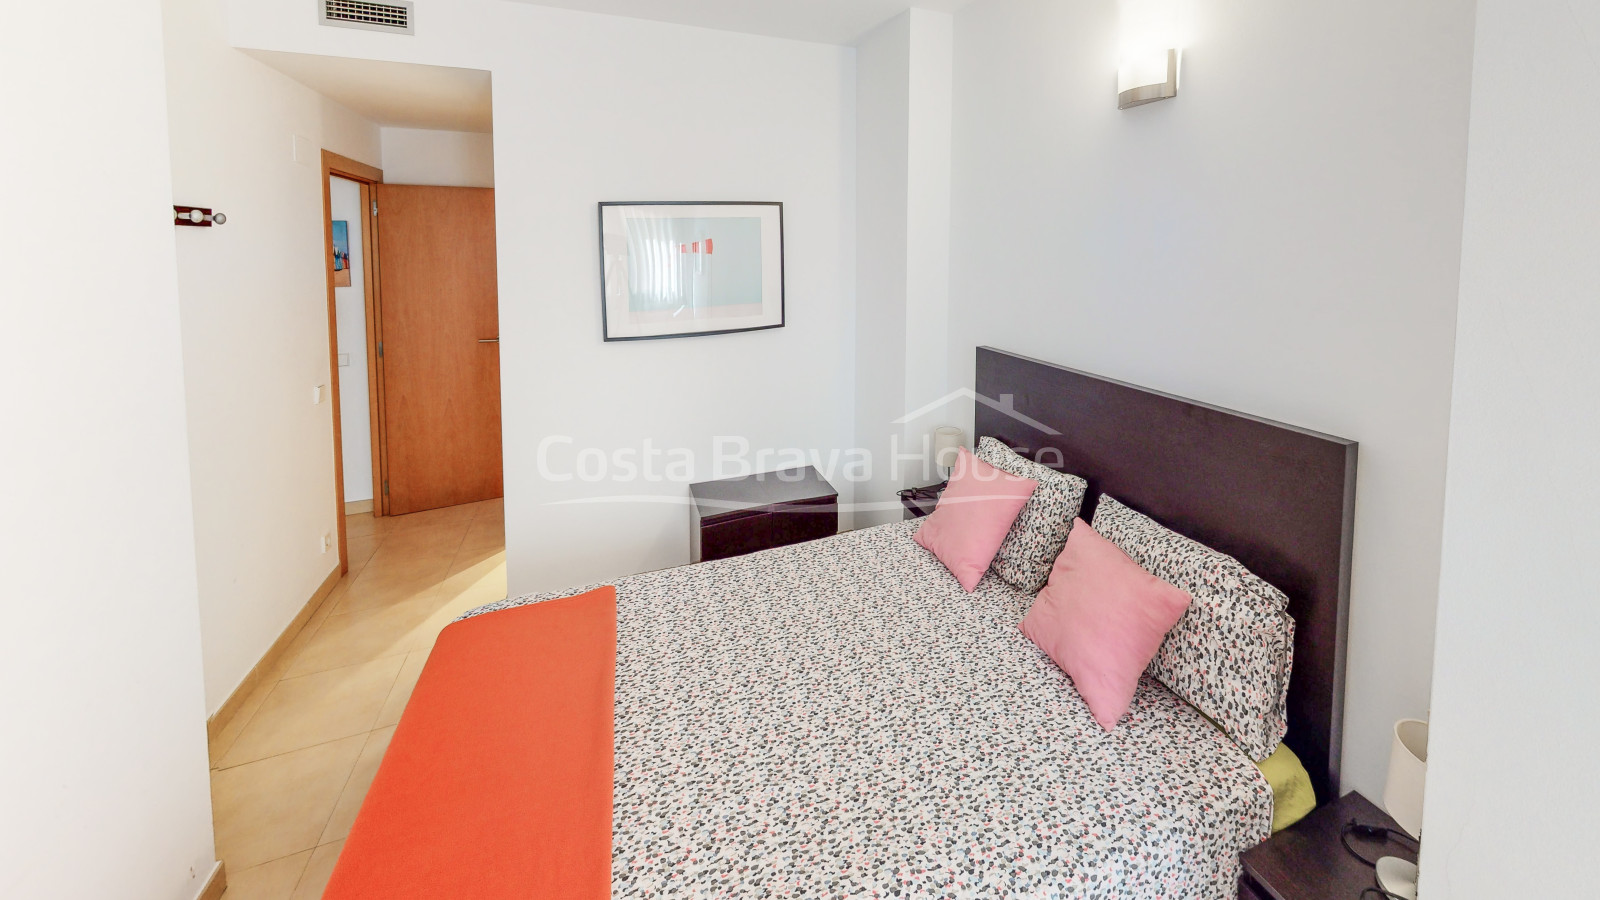 Apartament de 2 dormitoris amb garatge en venda a Tamariu, a només uns passos de la platja i el mar